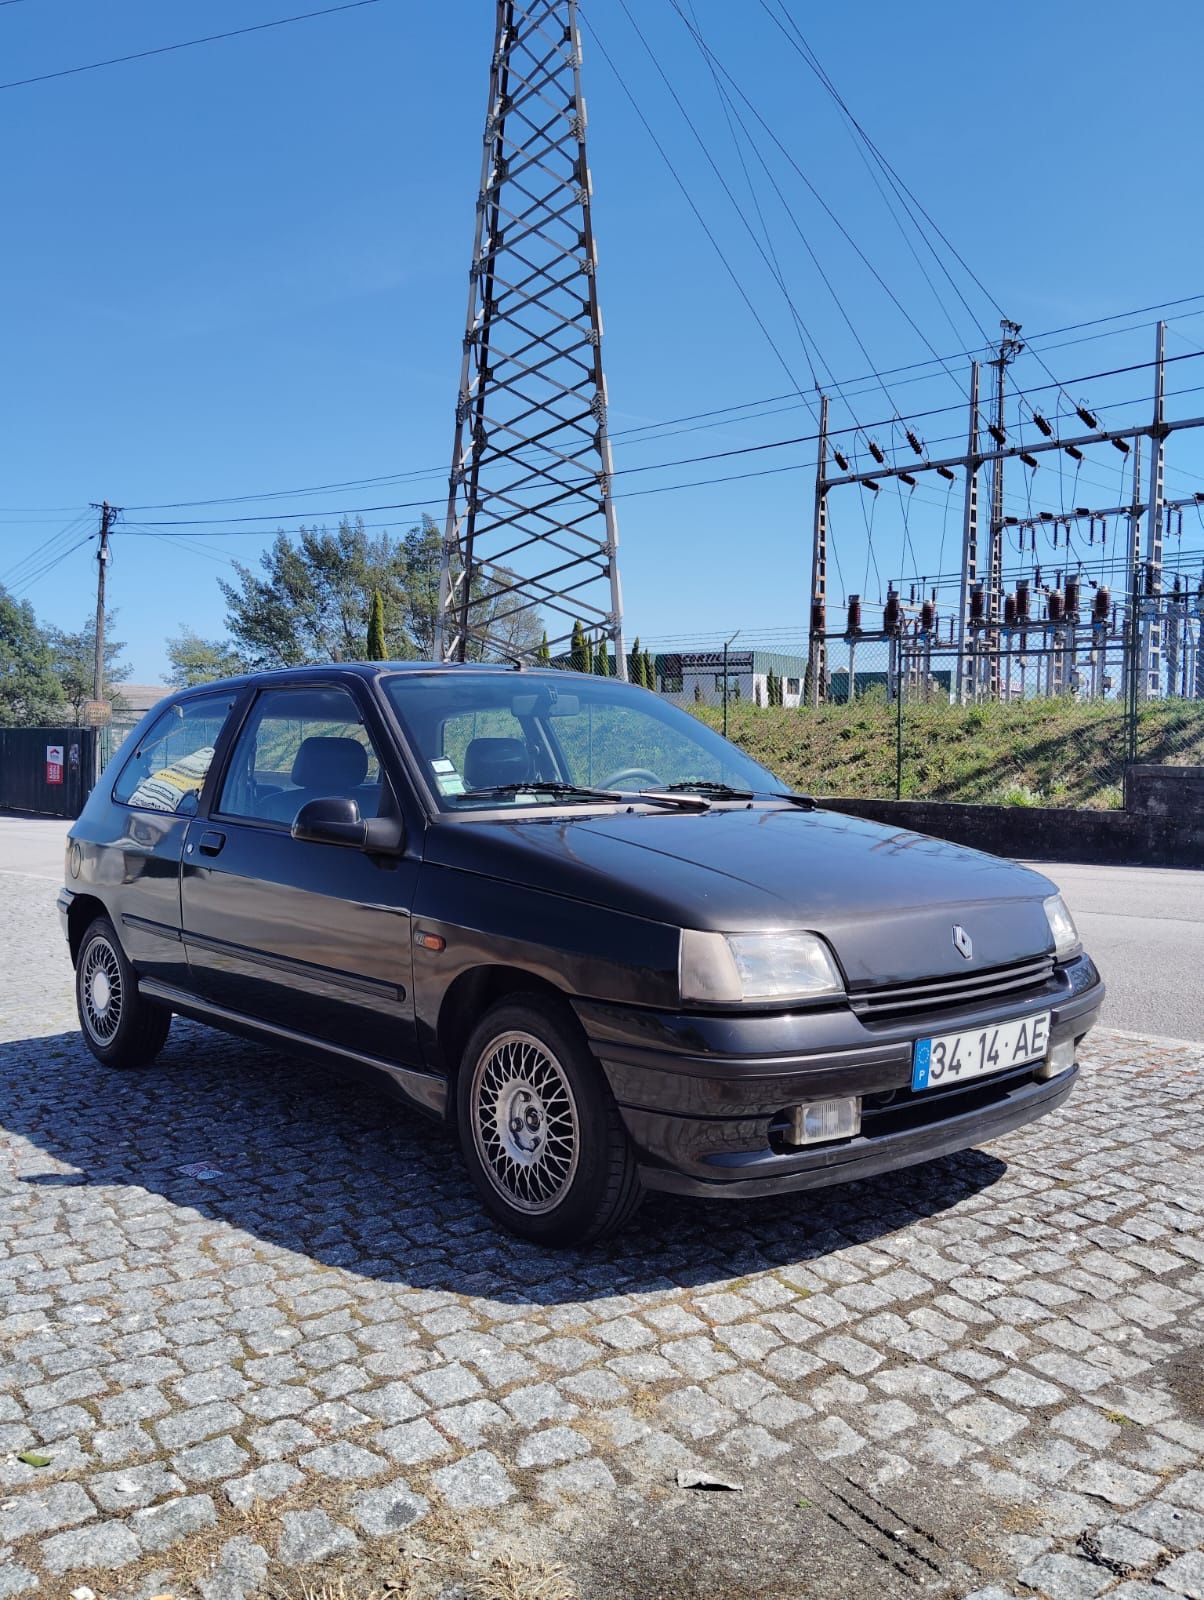 Renault baccara 1.4 3 portas